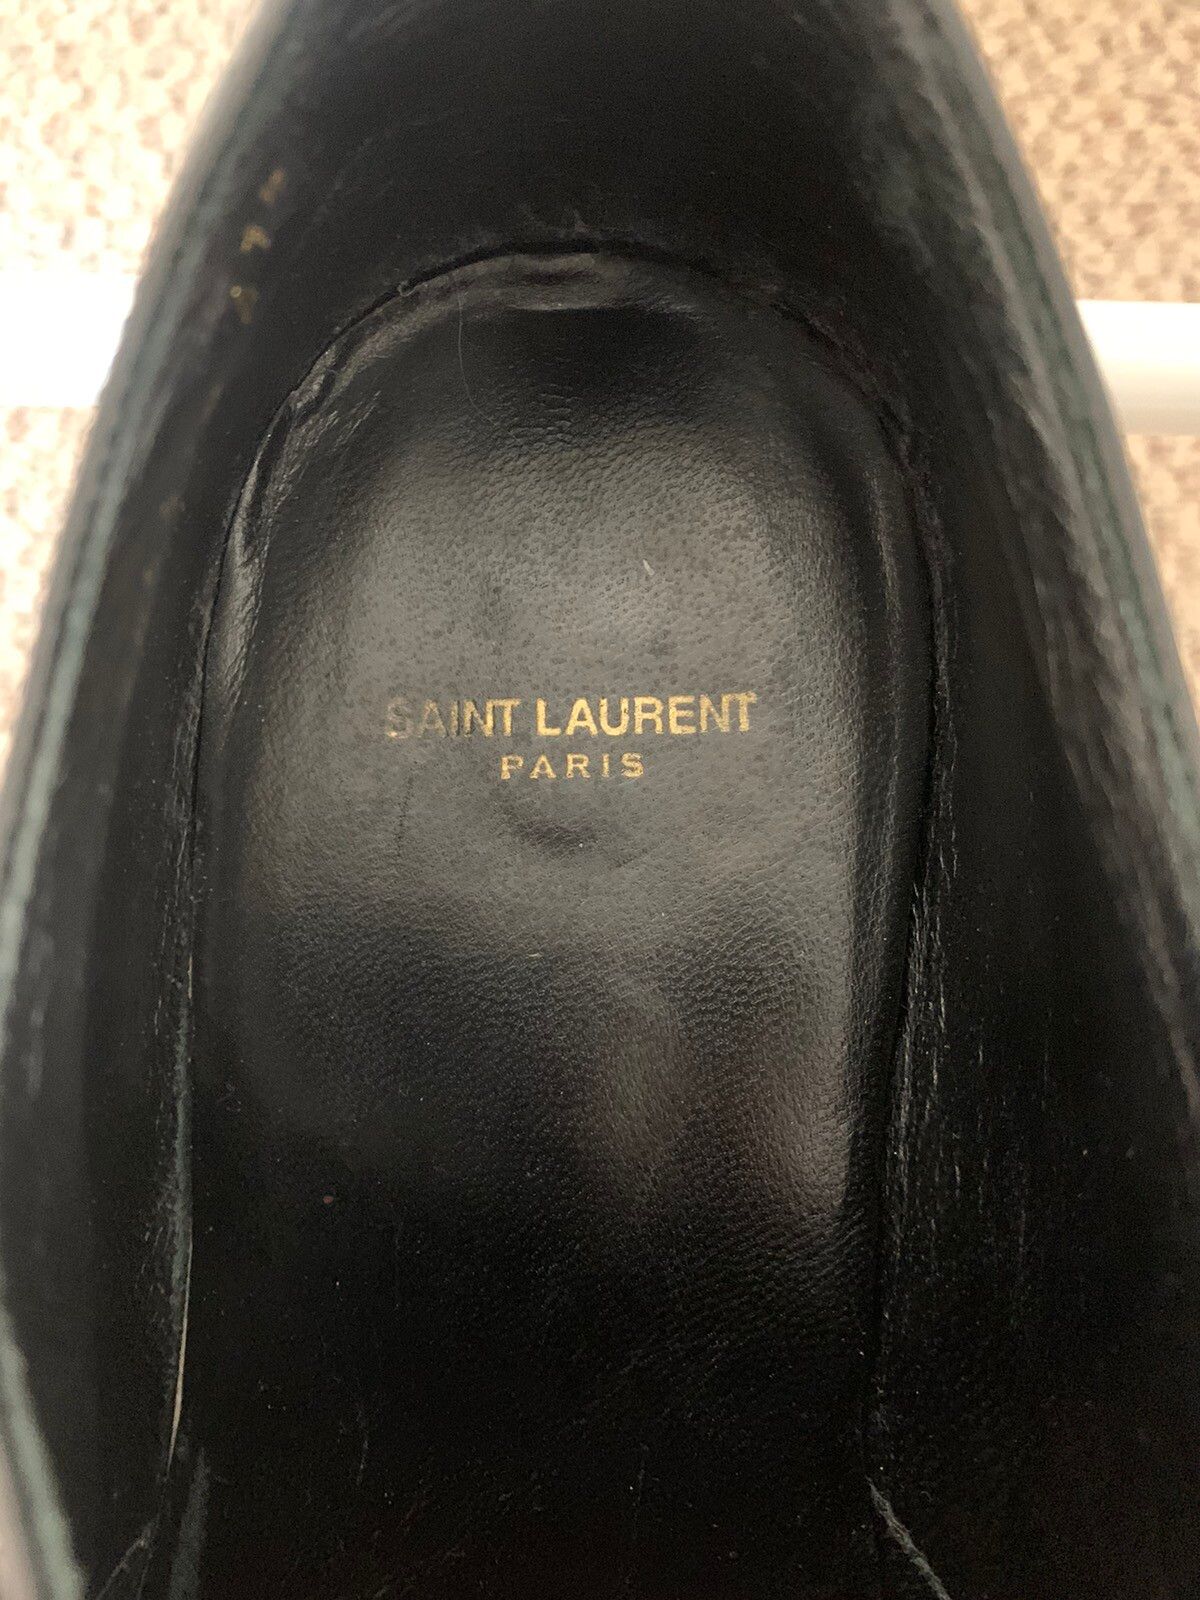 Saint Laurent Paris Saint Laurent Paris SS14 Duckie Monk Strap Loafer Size US 7.5 / EU 40-41 - 11 Thumbnail